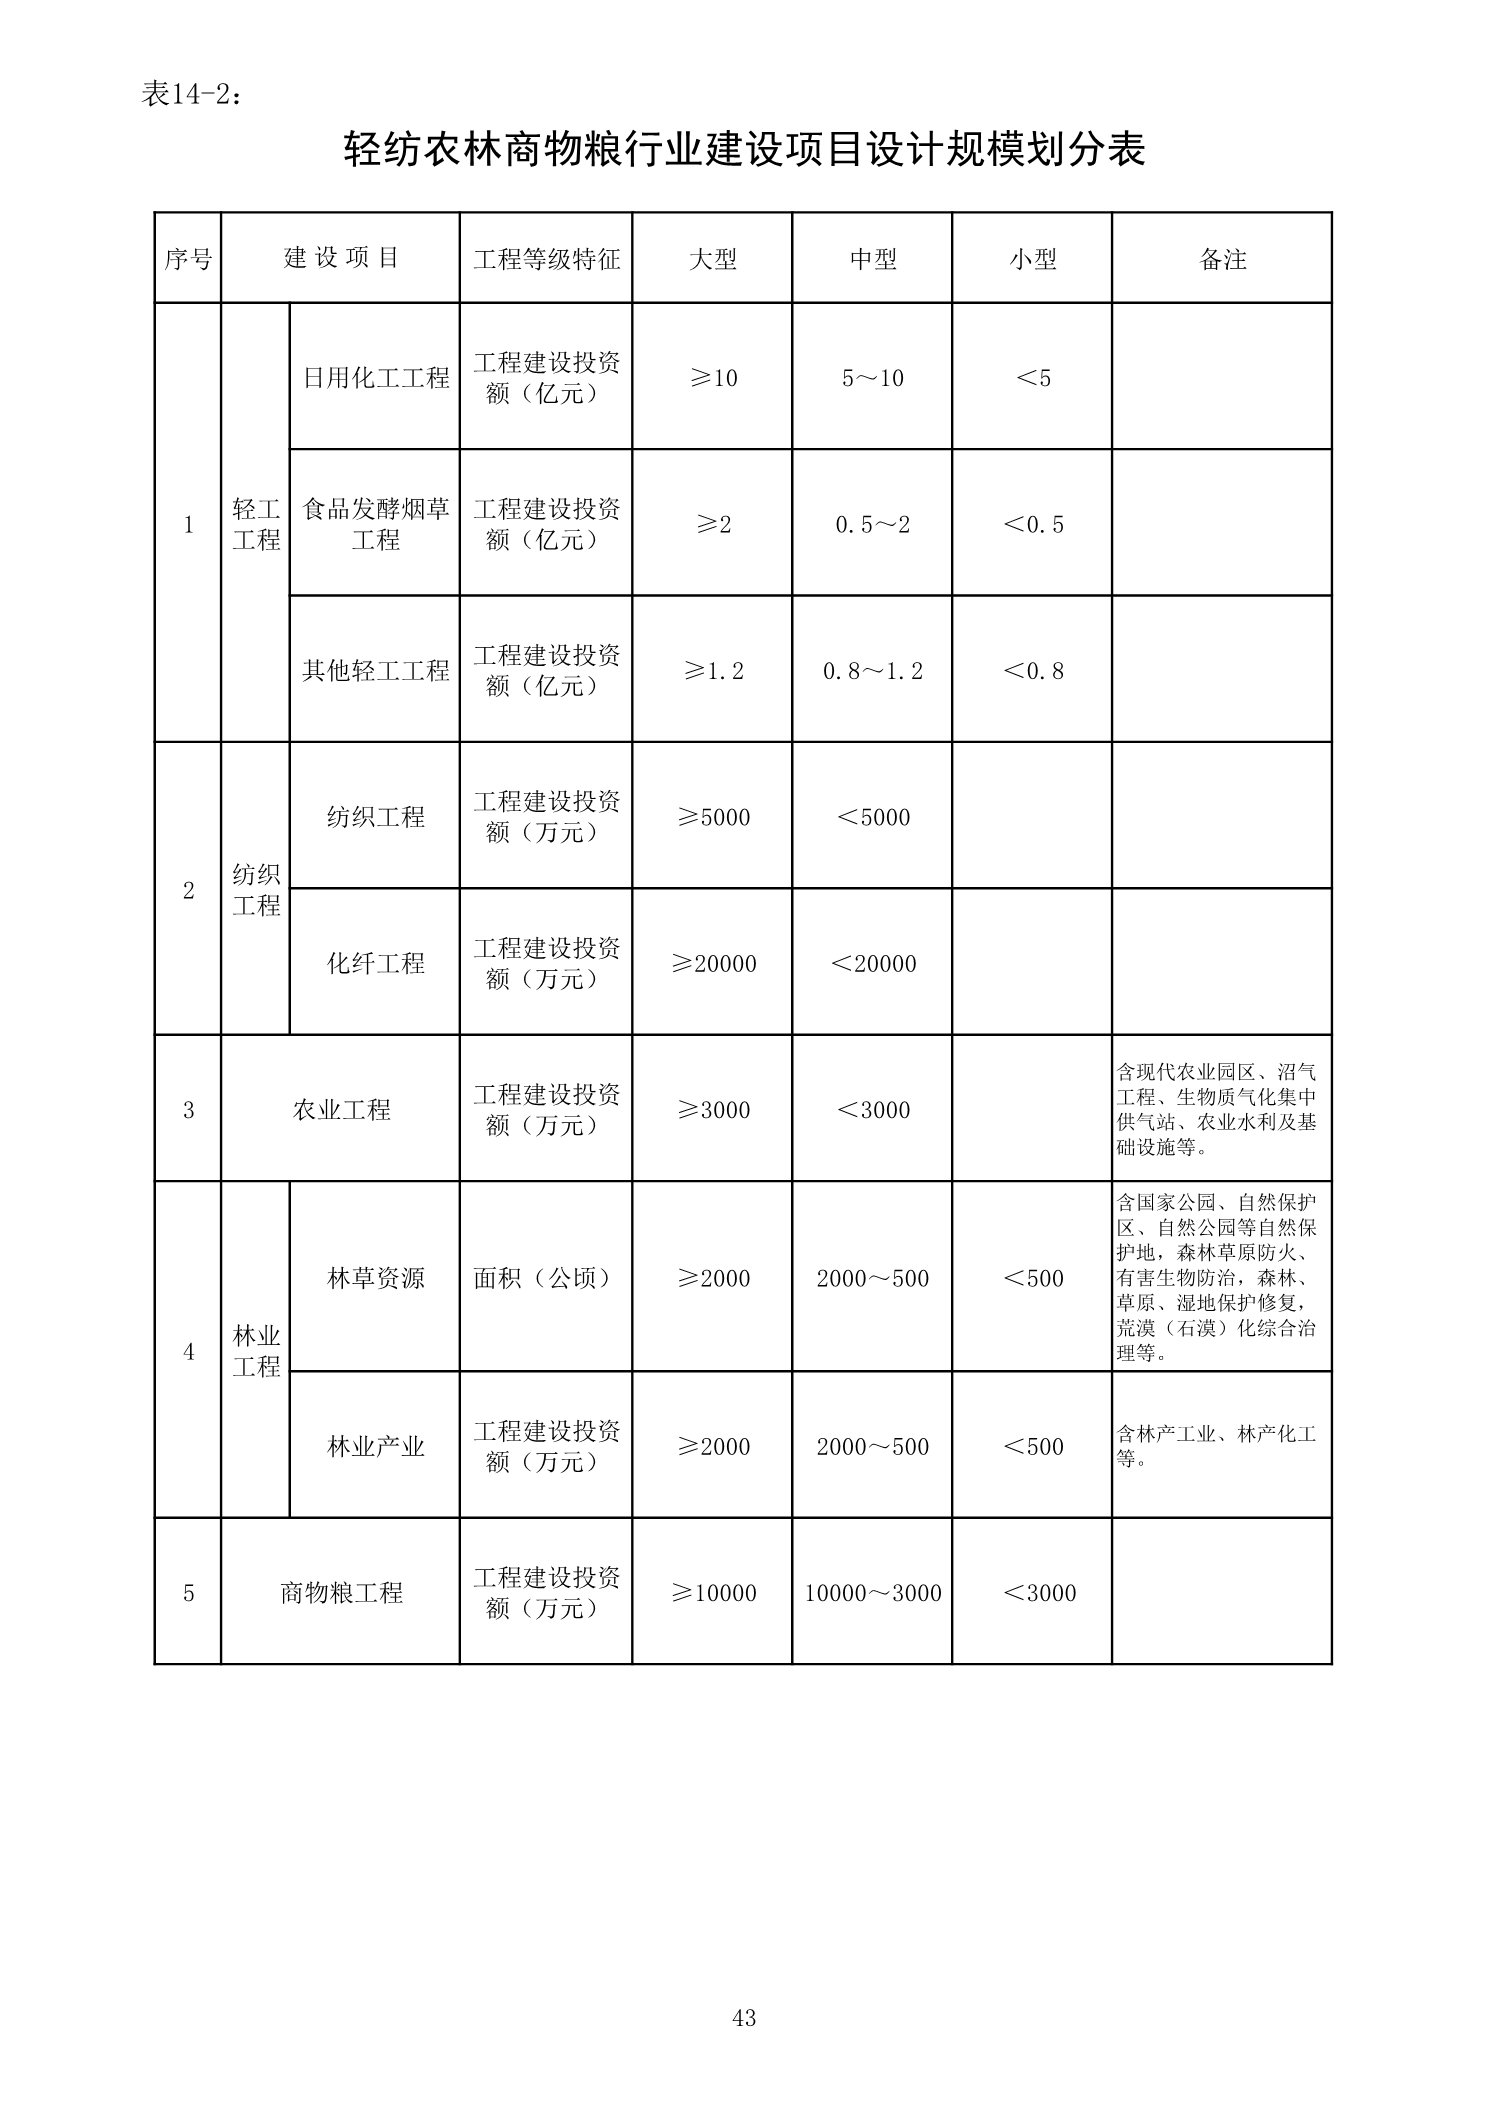 表 14-2 轻纺农林商物粮行业建设项目设计规模划分表